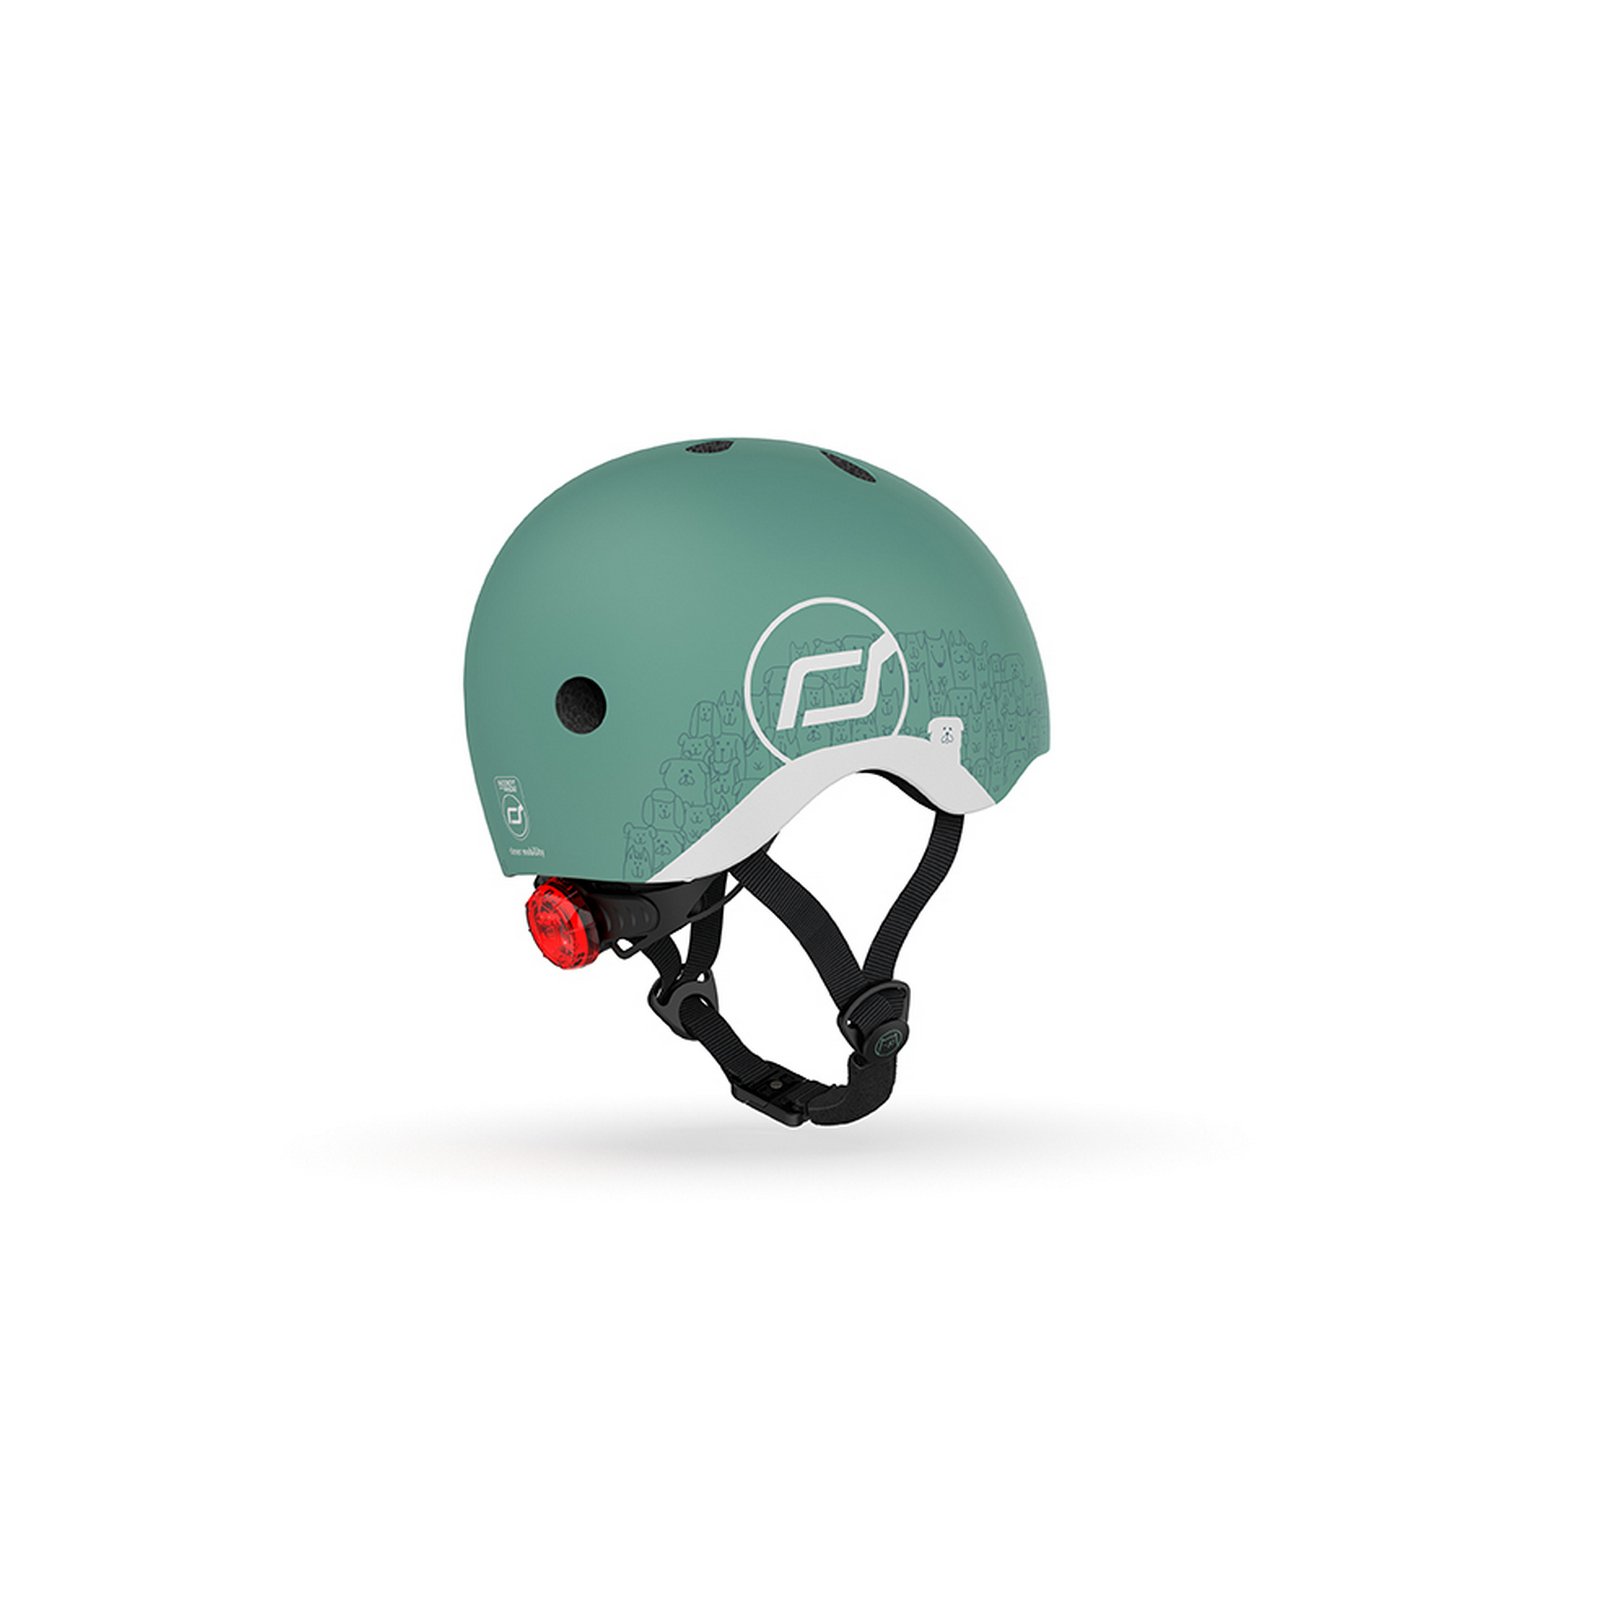 Шлем защитный Scoot and Ride светоотражающий, с фонариком, 45-51 см (XXS/XS), серо-зеленый (SR-210225-FOREST) - фото 2